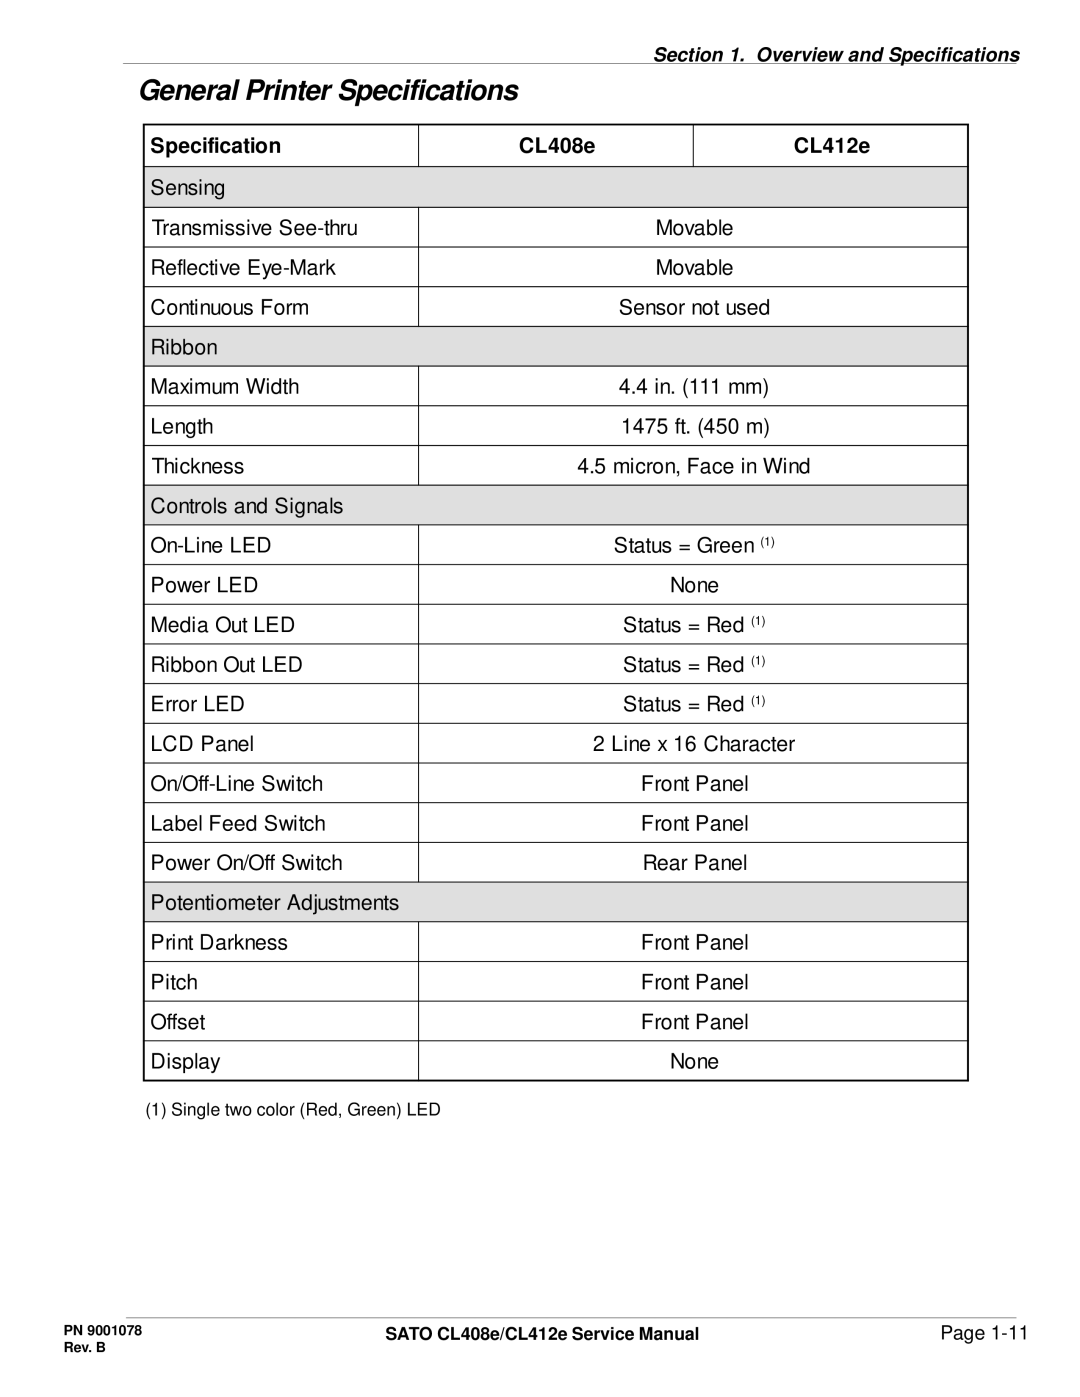 SATO CL412E service manual General Printer Specifications 